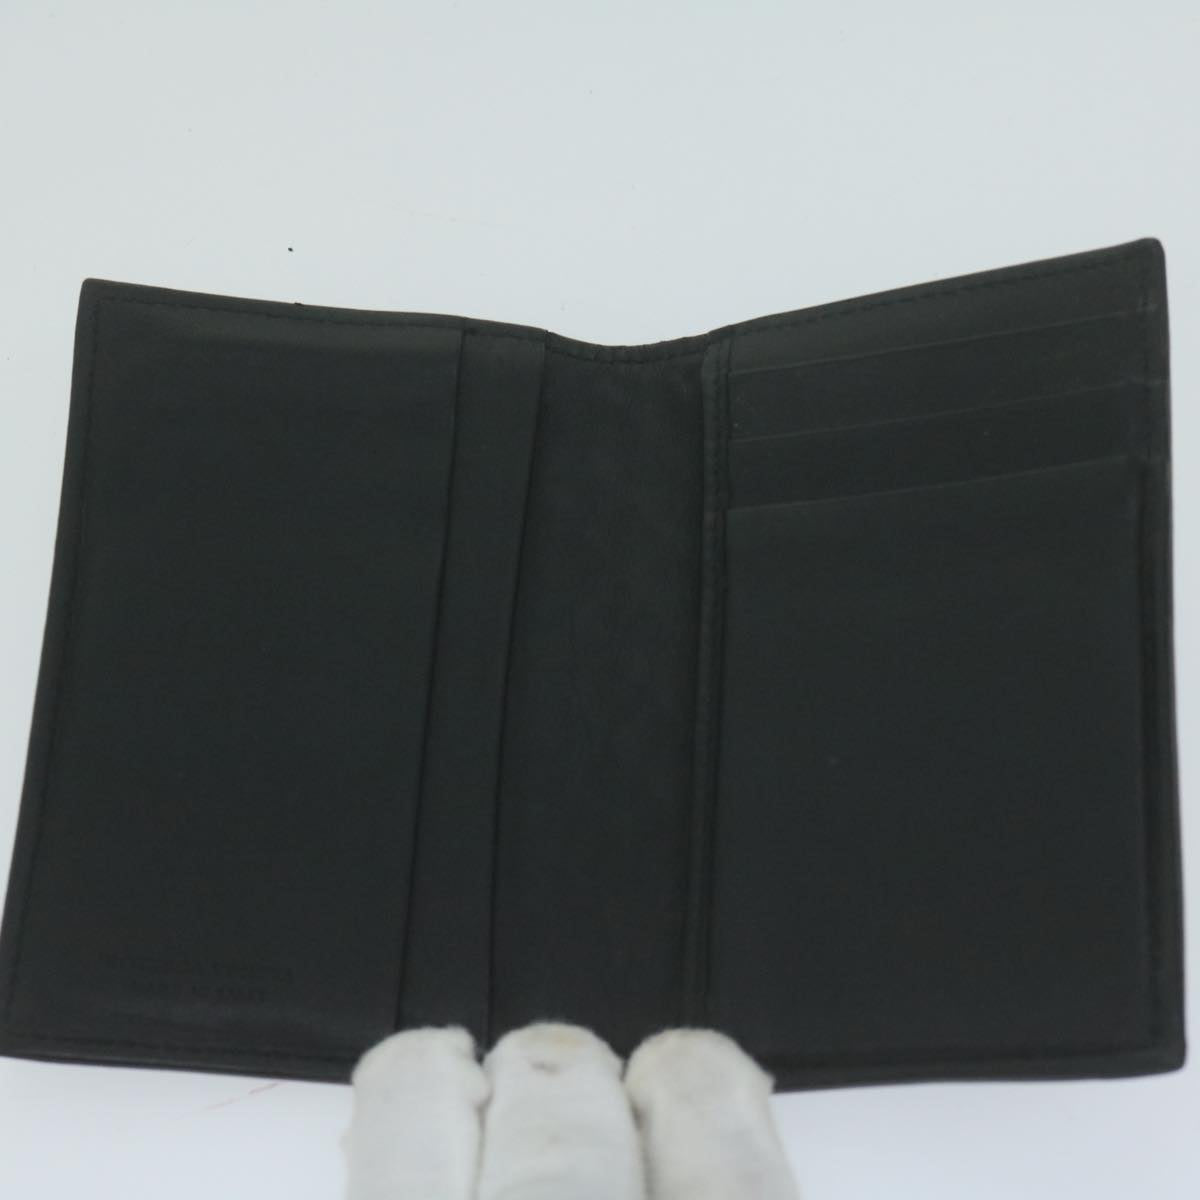 BOTTEGA VENETA INTRECCIATO Card Case Leather Black Auth yk10559